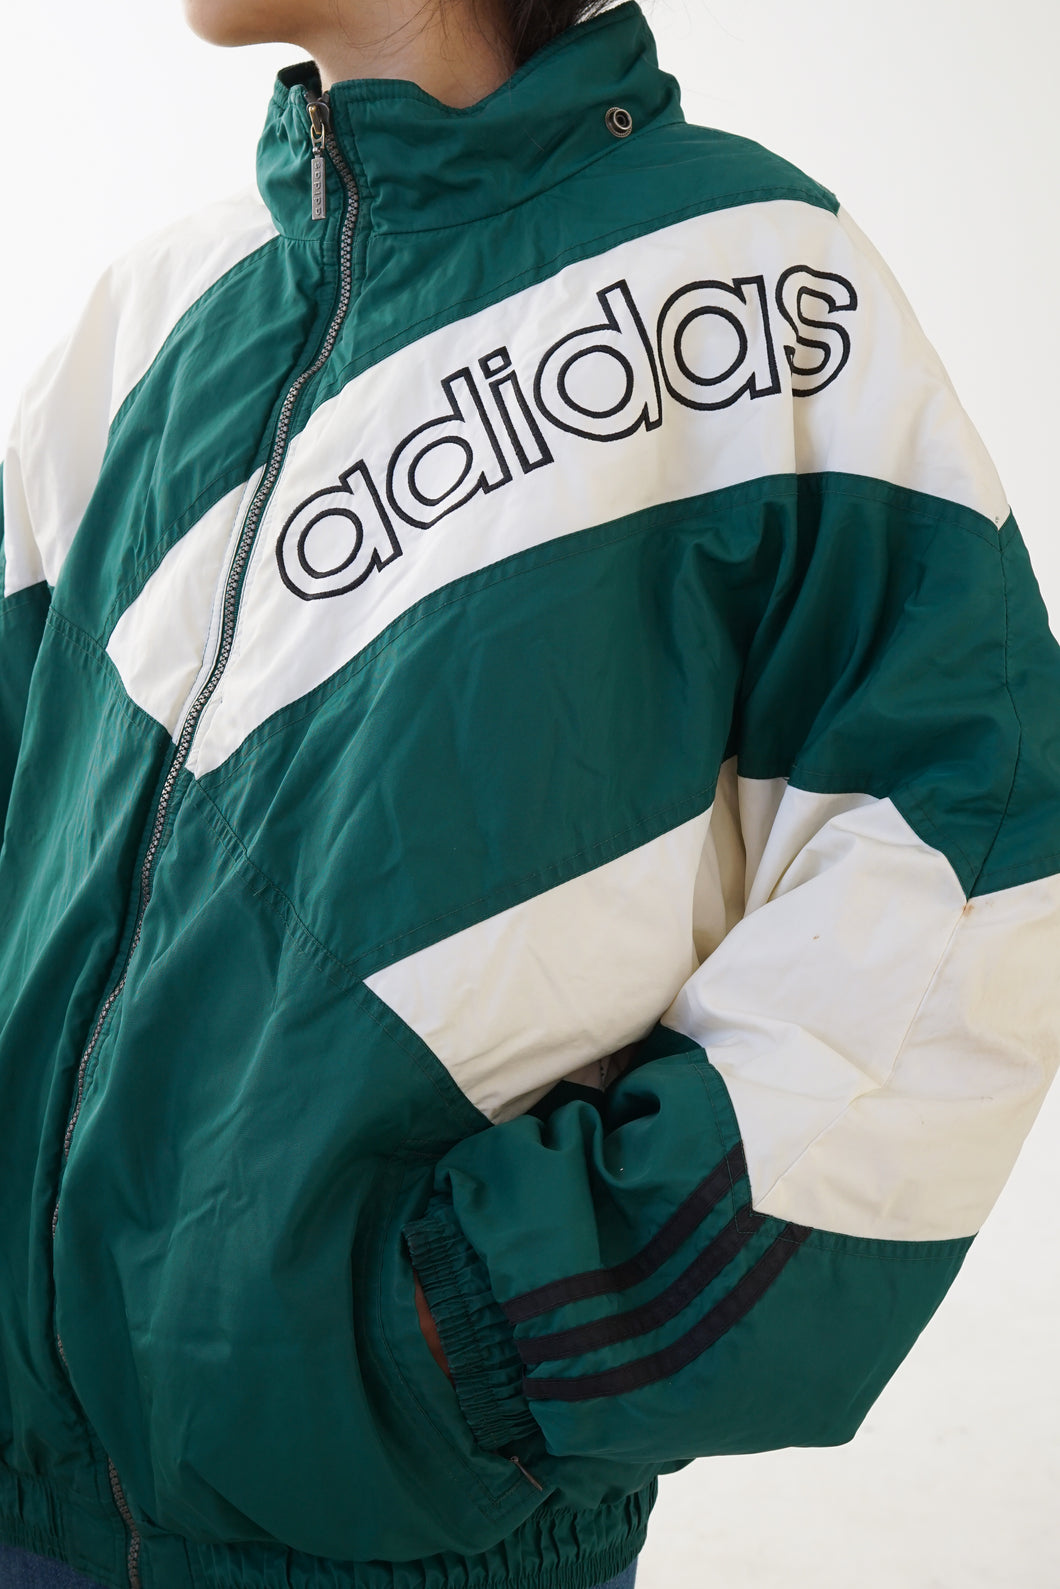 Manteau 90s Adidas vert et blanc unisexe taille L